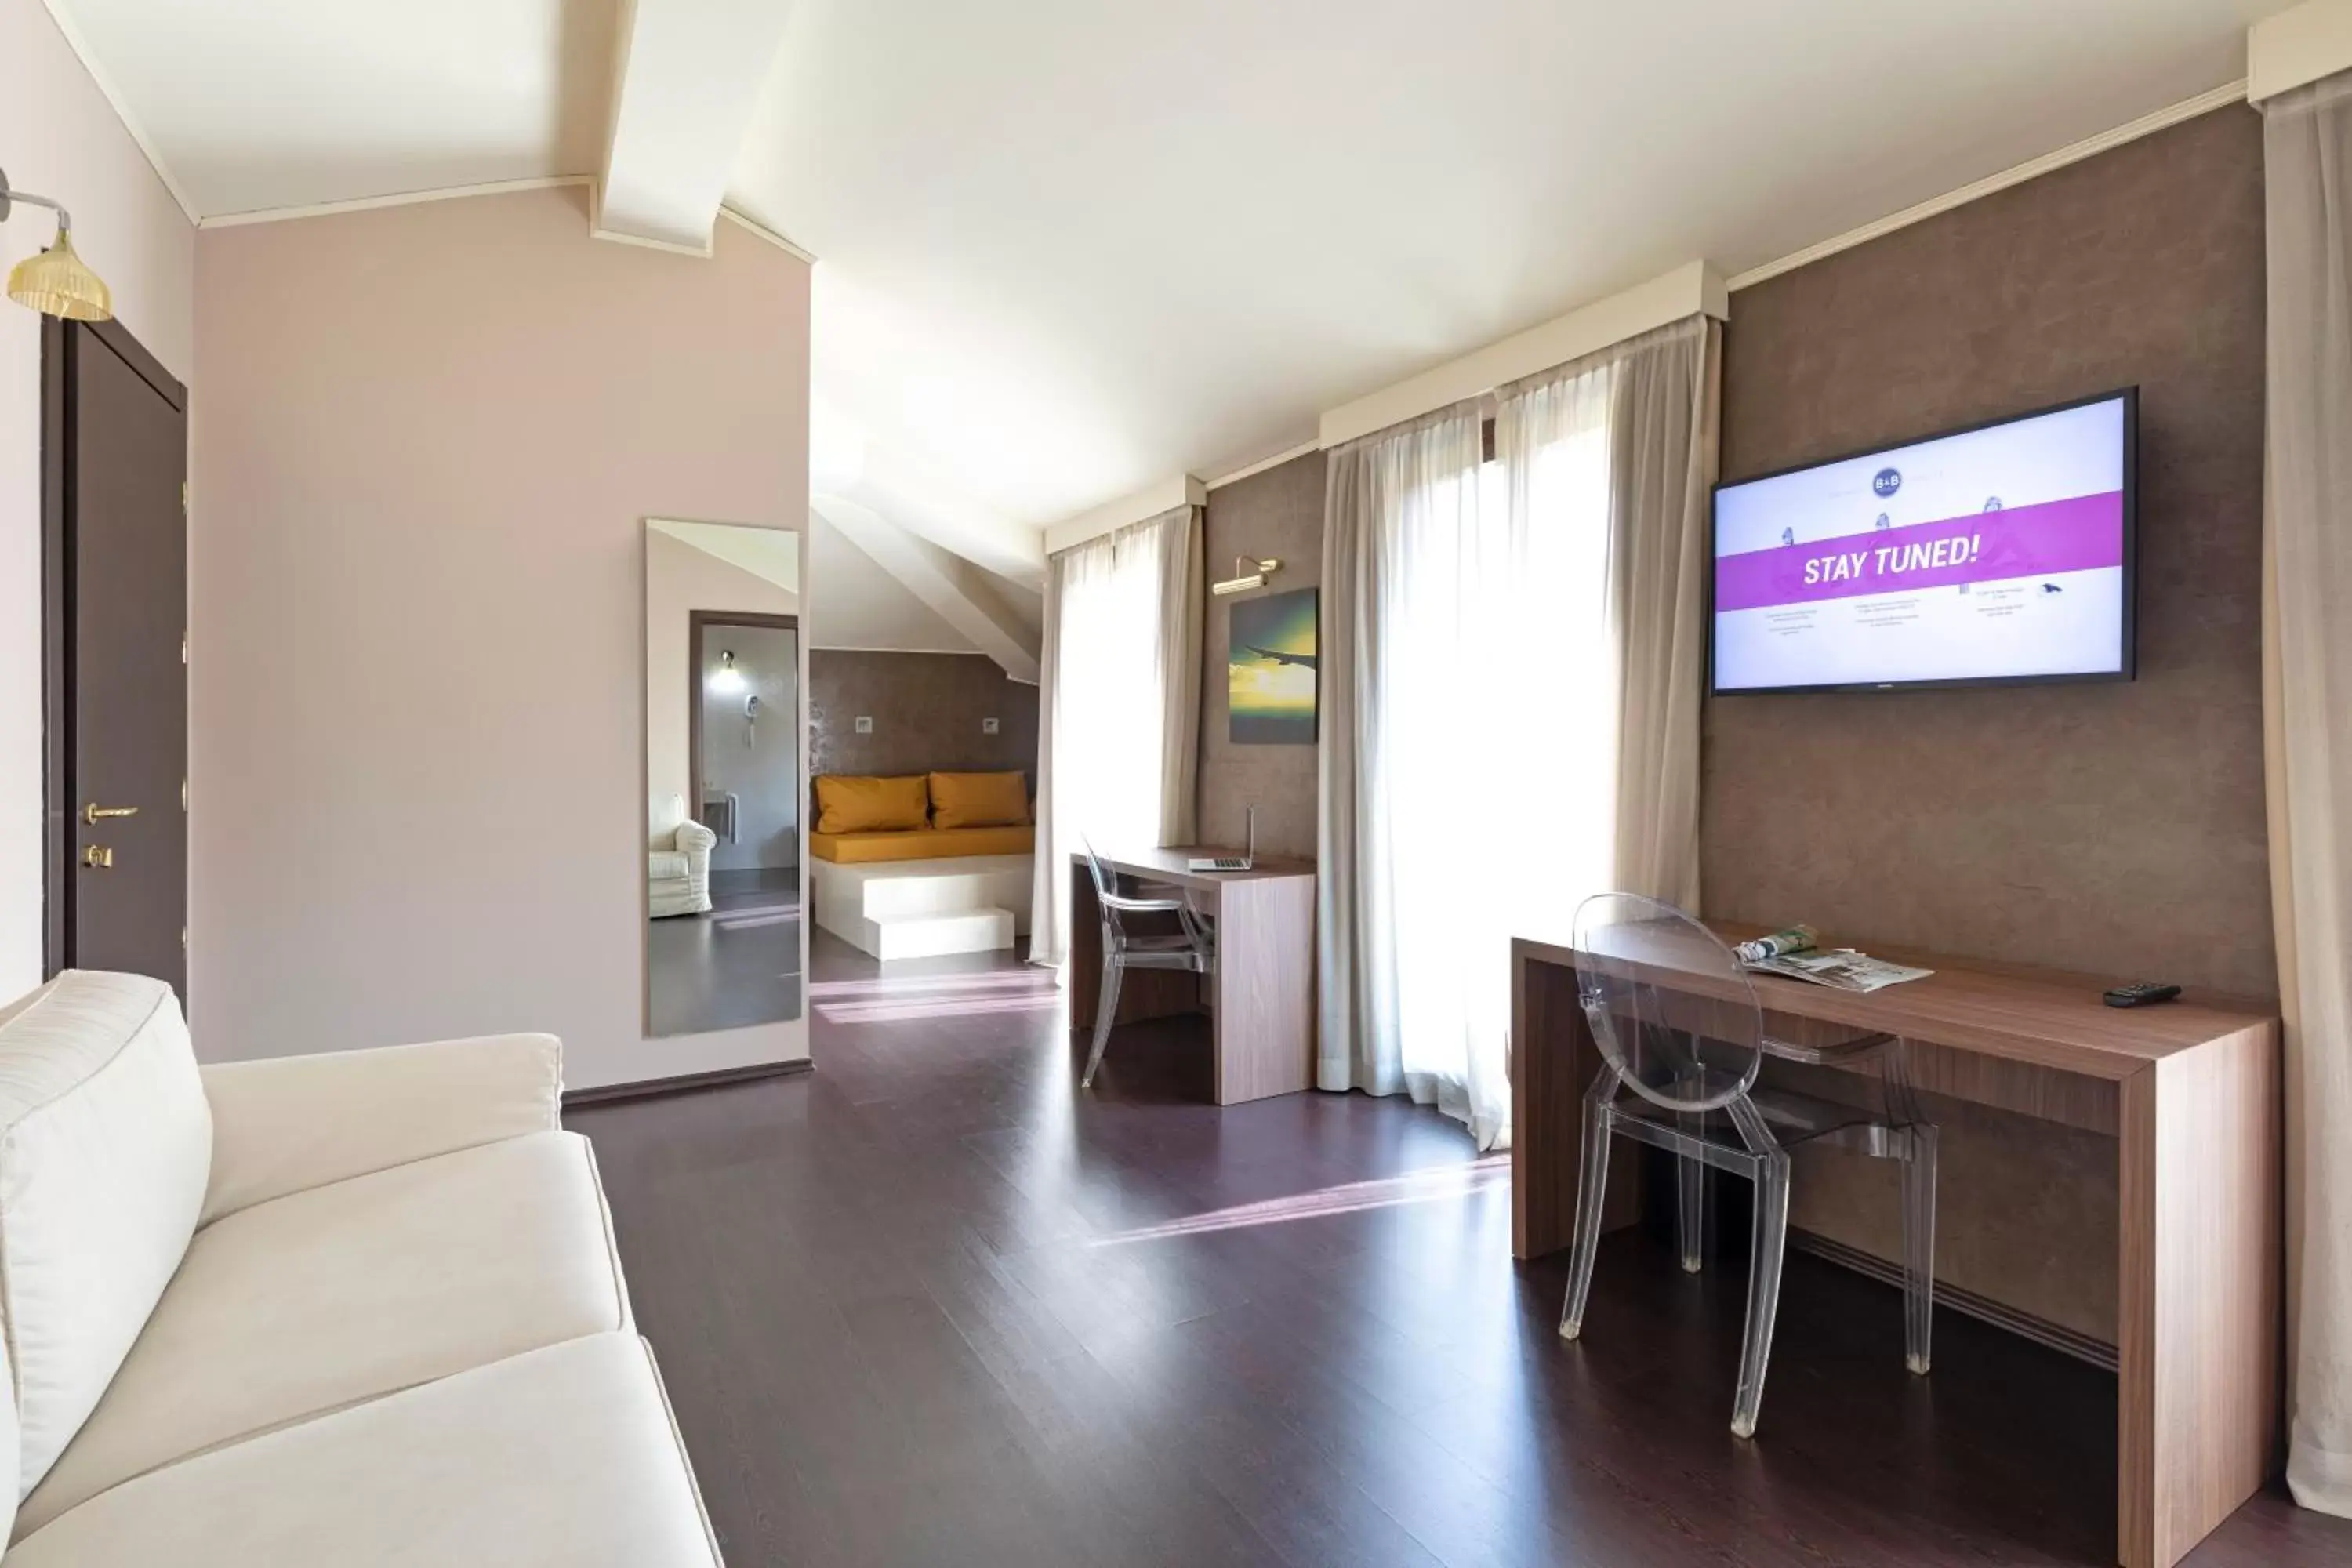 Bedroom, TV/Entertainment Center in B&B Hotel Malpensa Lago Maggiore